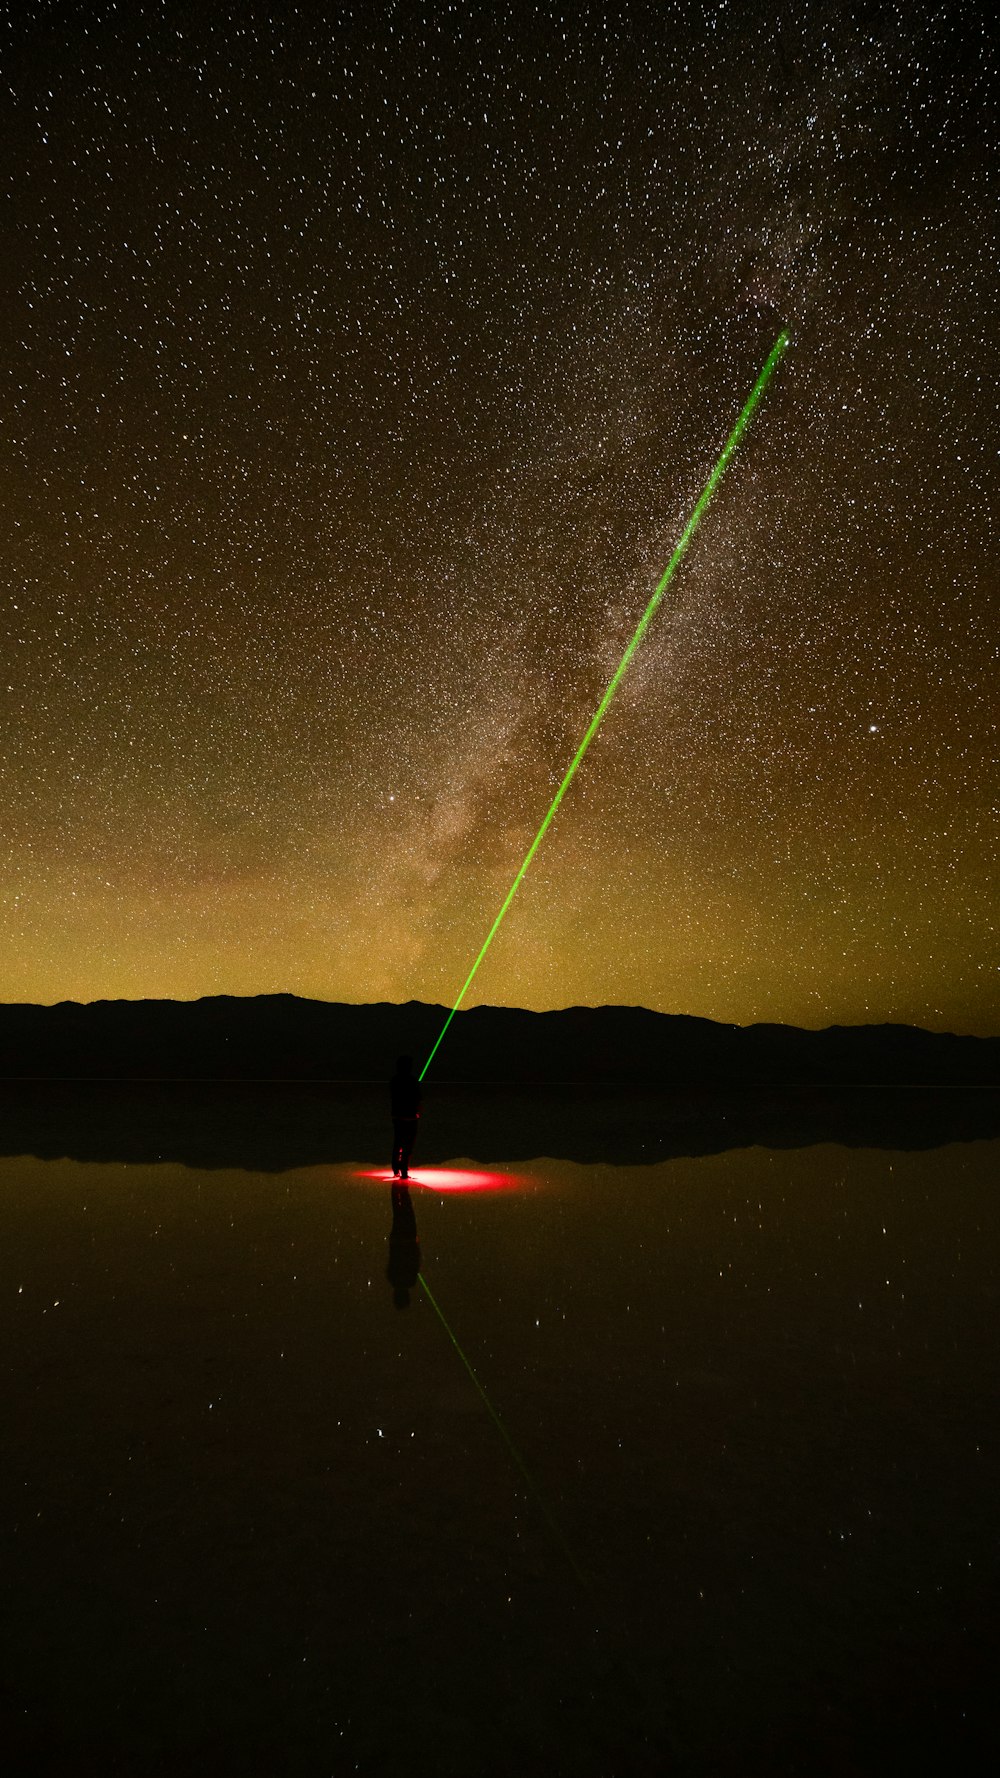 Ein grüner Laser ist am Nachthimmel sichtbar